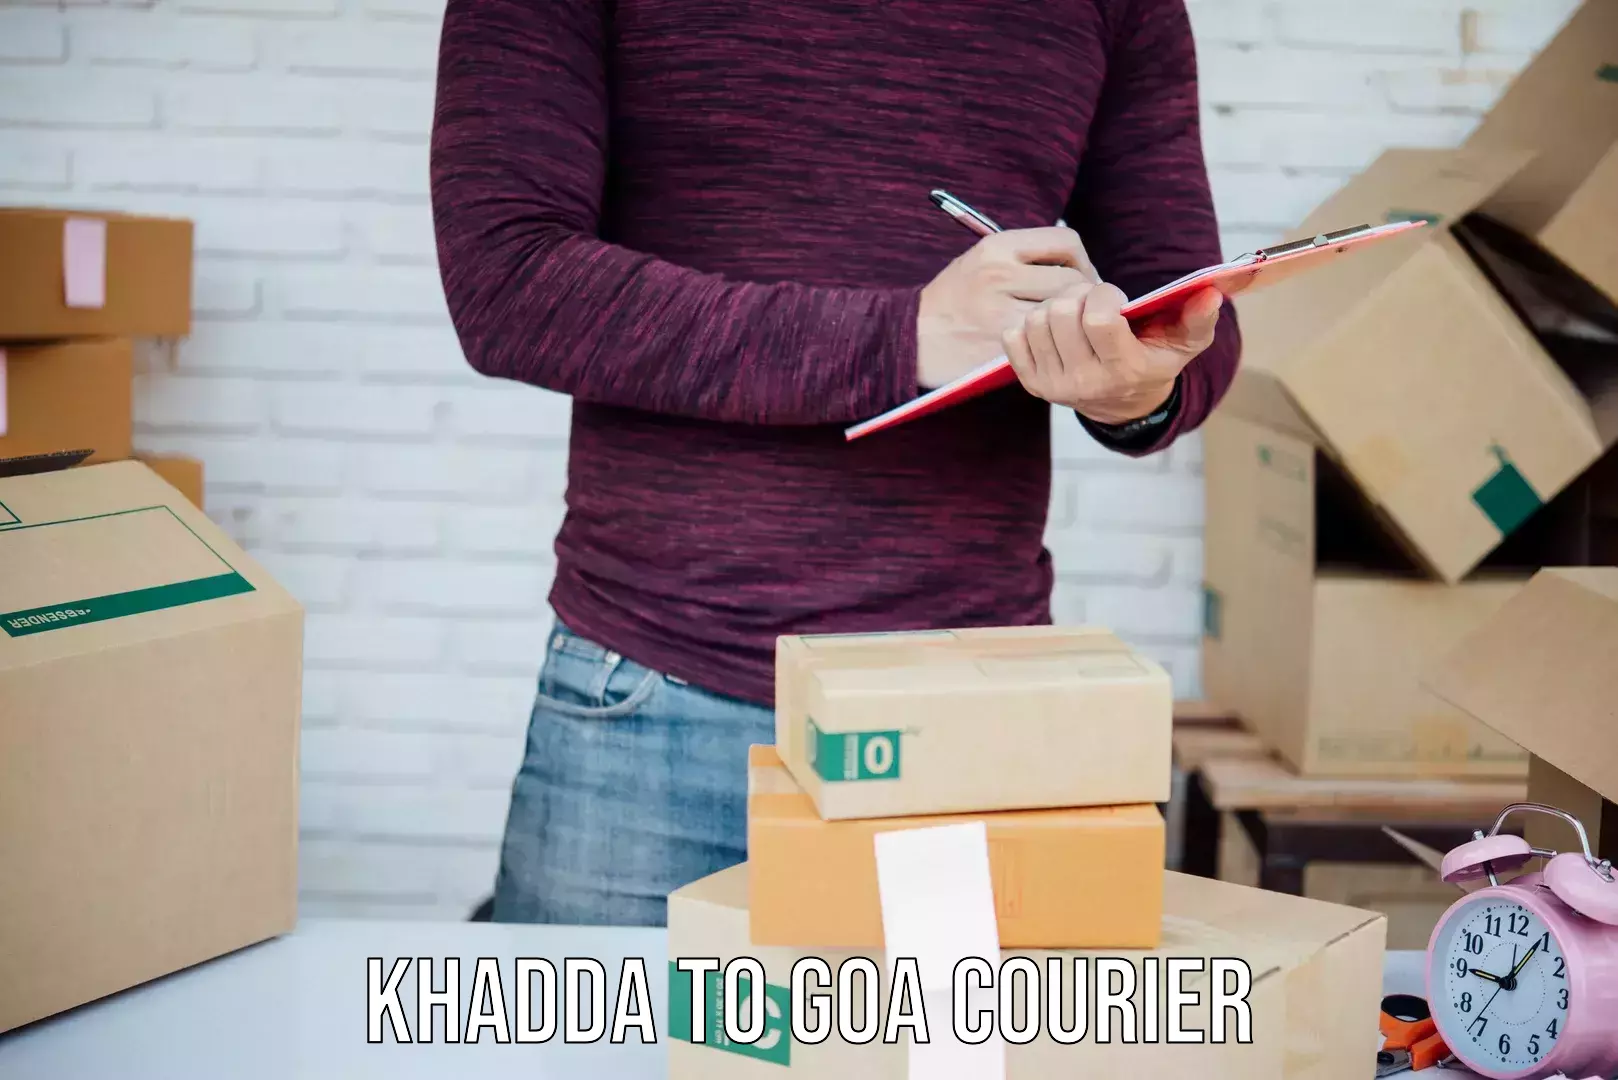 Urgent courier needs Khadda to Margao